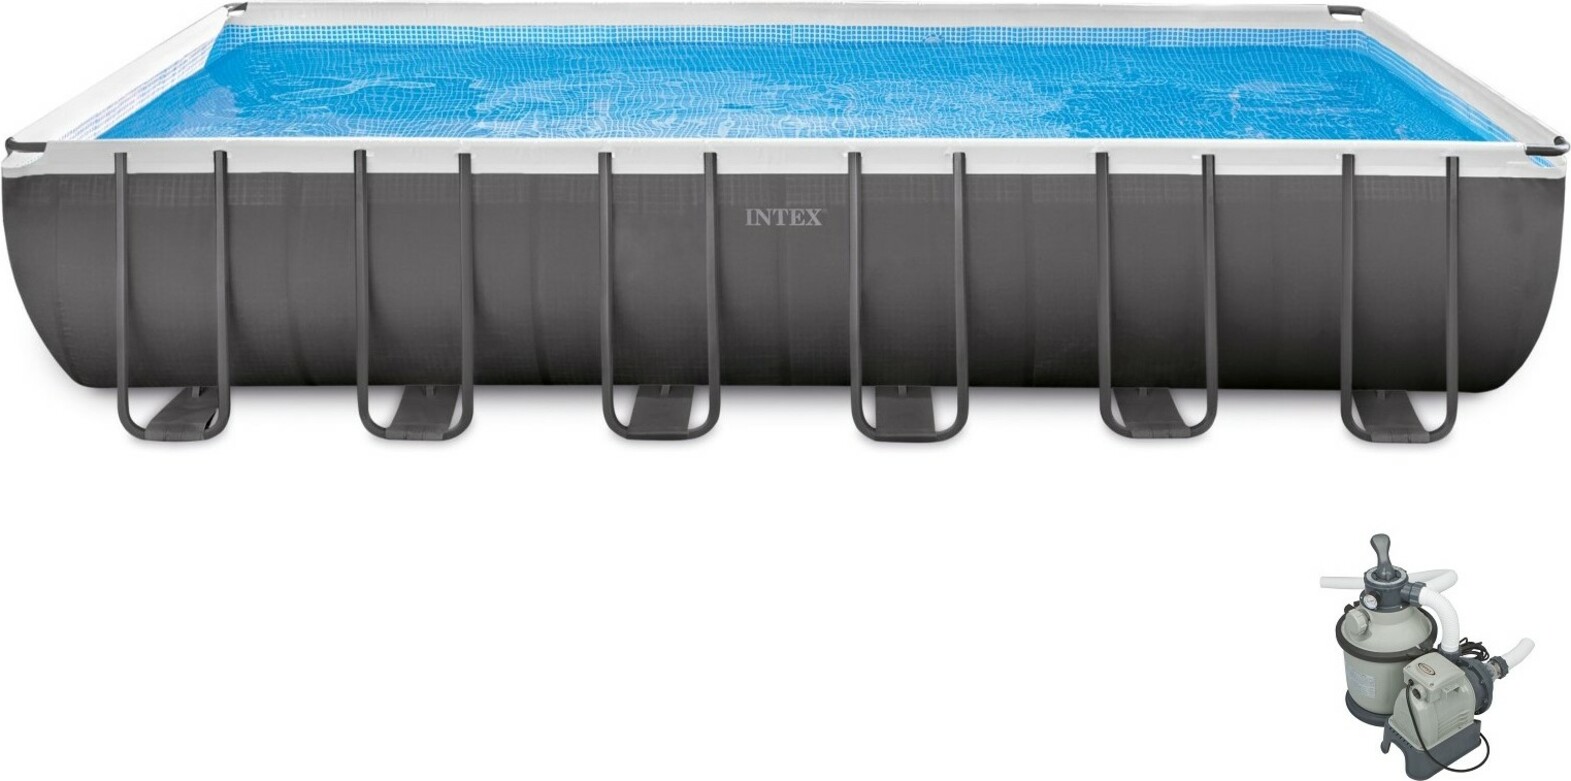 Intex bazén Ultra Frame 732 x 366 x 132 cm 26364 písková filtrace